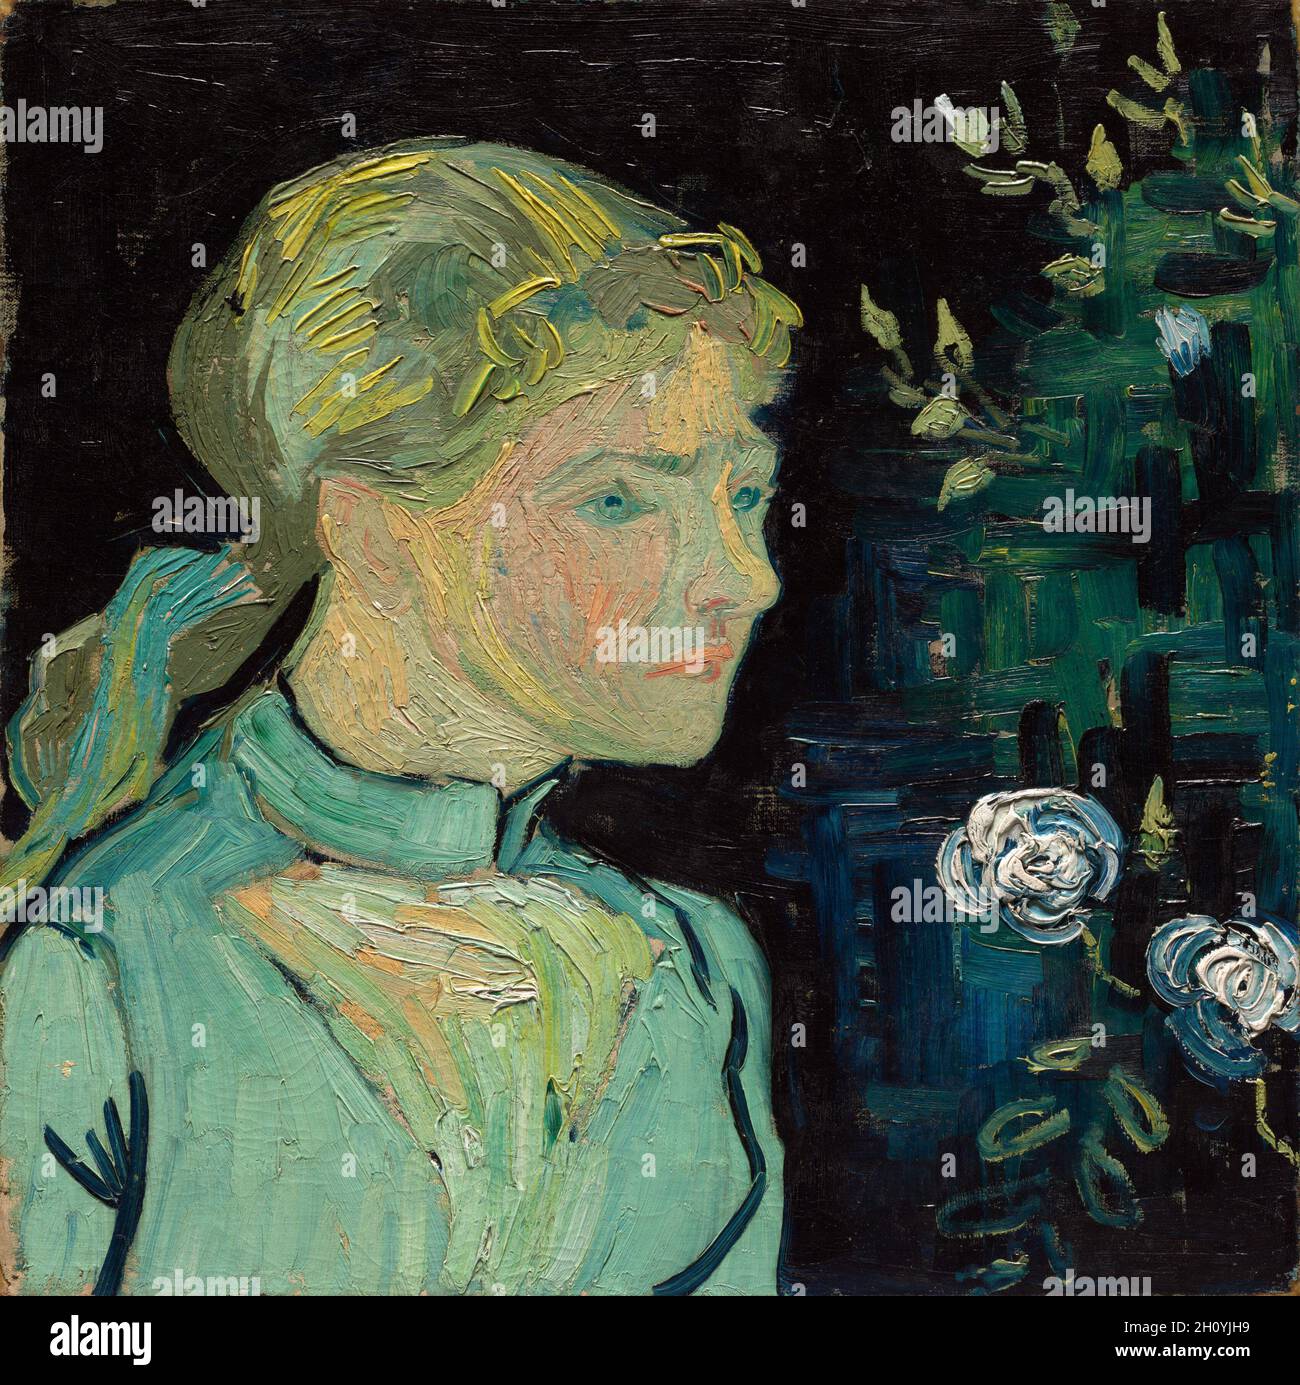 Adeline Ravoux, 1890. Vincent van Gogh (olandese, 1853-1890). Olio su tessuto; telaio: 72.5 x 73.5 x 8.5 cm (28 9/16 x 28 15/16 x 3 3/8 pollici); senza telaio: 50.2 x 50.5 cm (19 3/4 x 19 7/8 pollici). Nel maggio 1890, Van Gogh lasciò il sud e si stabilì ad Auvers-sur-Oise, una piccola città a nord di Parigi, dove affittò una camera alla locanda di Arthur Ravoux. Questo ritratto, completato negli ultimi mesi della vita dell’artista, raffigura la figlia di Ravoux, Adeline, di 13 anni. Van Gogh scrisse che, piuttosto che somiglianza fotografica, voleva che i suoi ritratti trasmettessero attraverso gli “aspetti appassionati” della vita contemporanea Foto Stock